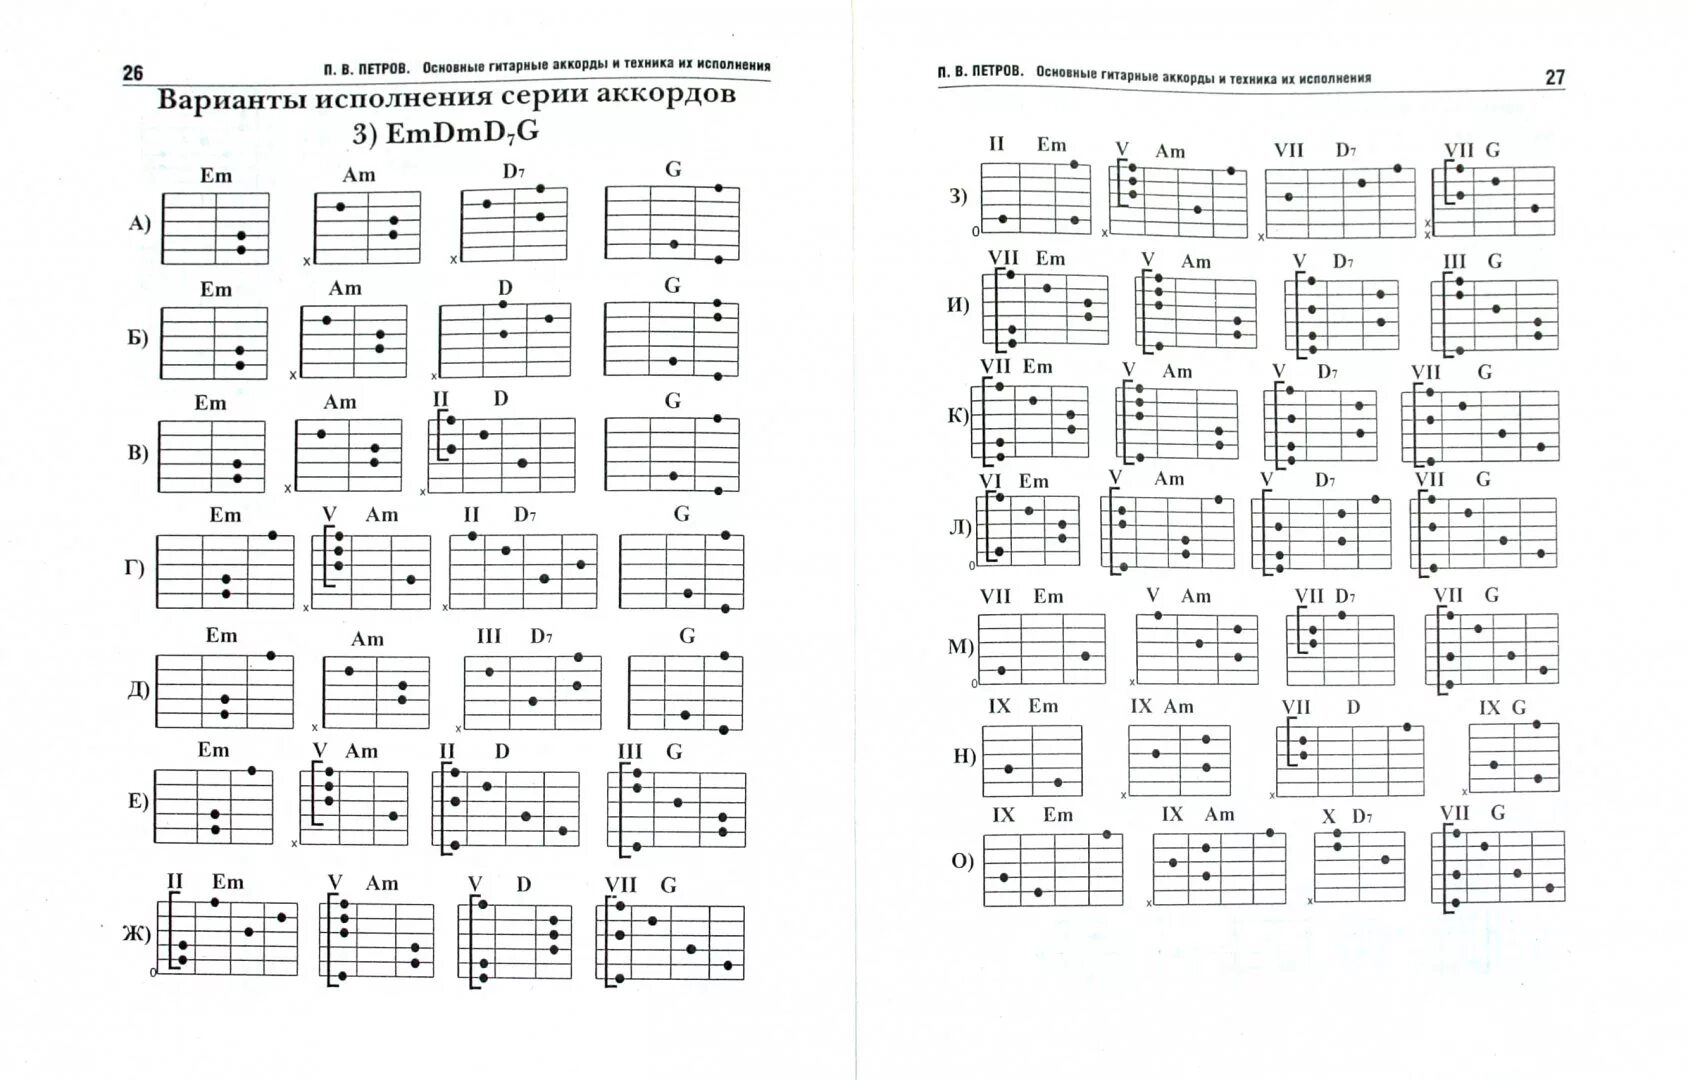 Дубак аккорды. Таблица аккордов для гитары 6 струн для начинающих. Гитарные аккорды таблица для начинающих. Аккорды на 6 струнной гитаре. Таблица простых аккордов для гитары 6 струн.